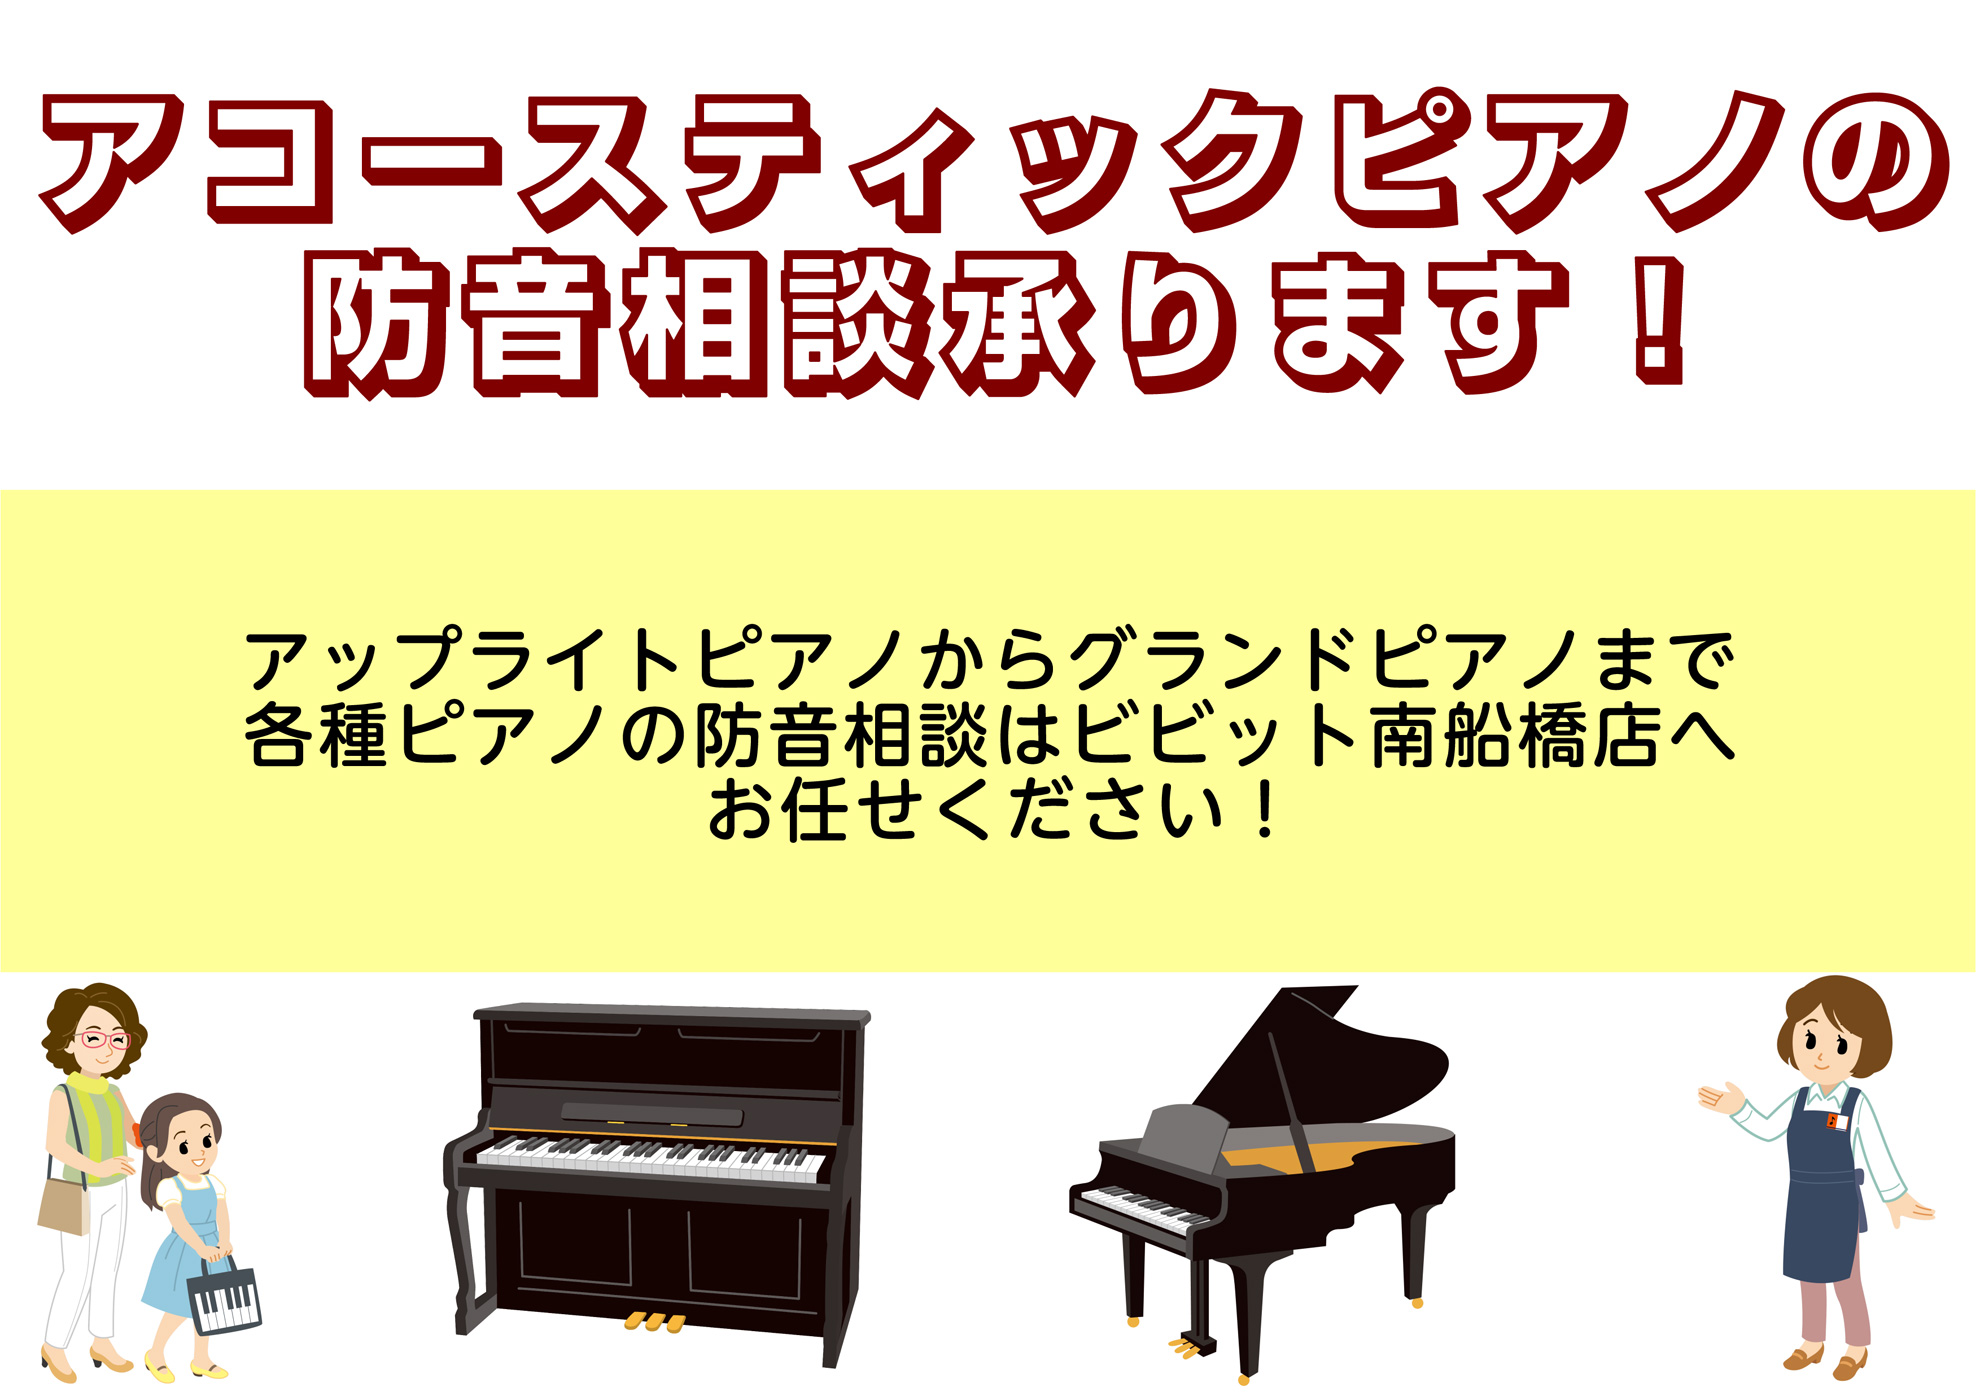 音のお悩み、防音室で改善致しませんか？ 島村楽器ビビット南船橋店内、防音ショールーム千葉では防音室内でアップライトピアノやグランドピアノをお試し頂けます。「グランドピアノを所有しているものの音のトラブルで弾けない・・・」や「今は電子ピアノで我慢しているがゆくゆくはアコースティックピアノを・・・」とい […]